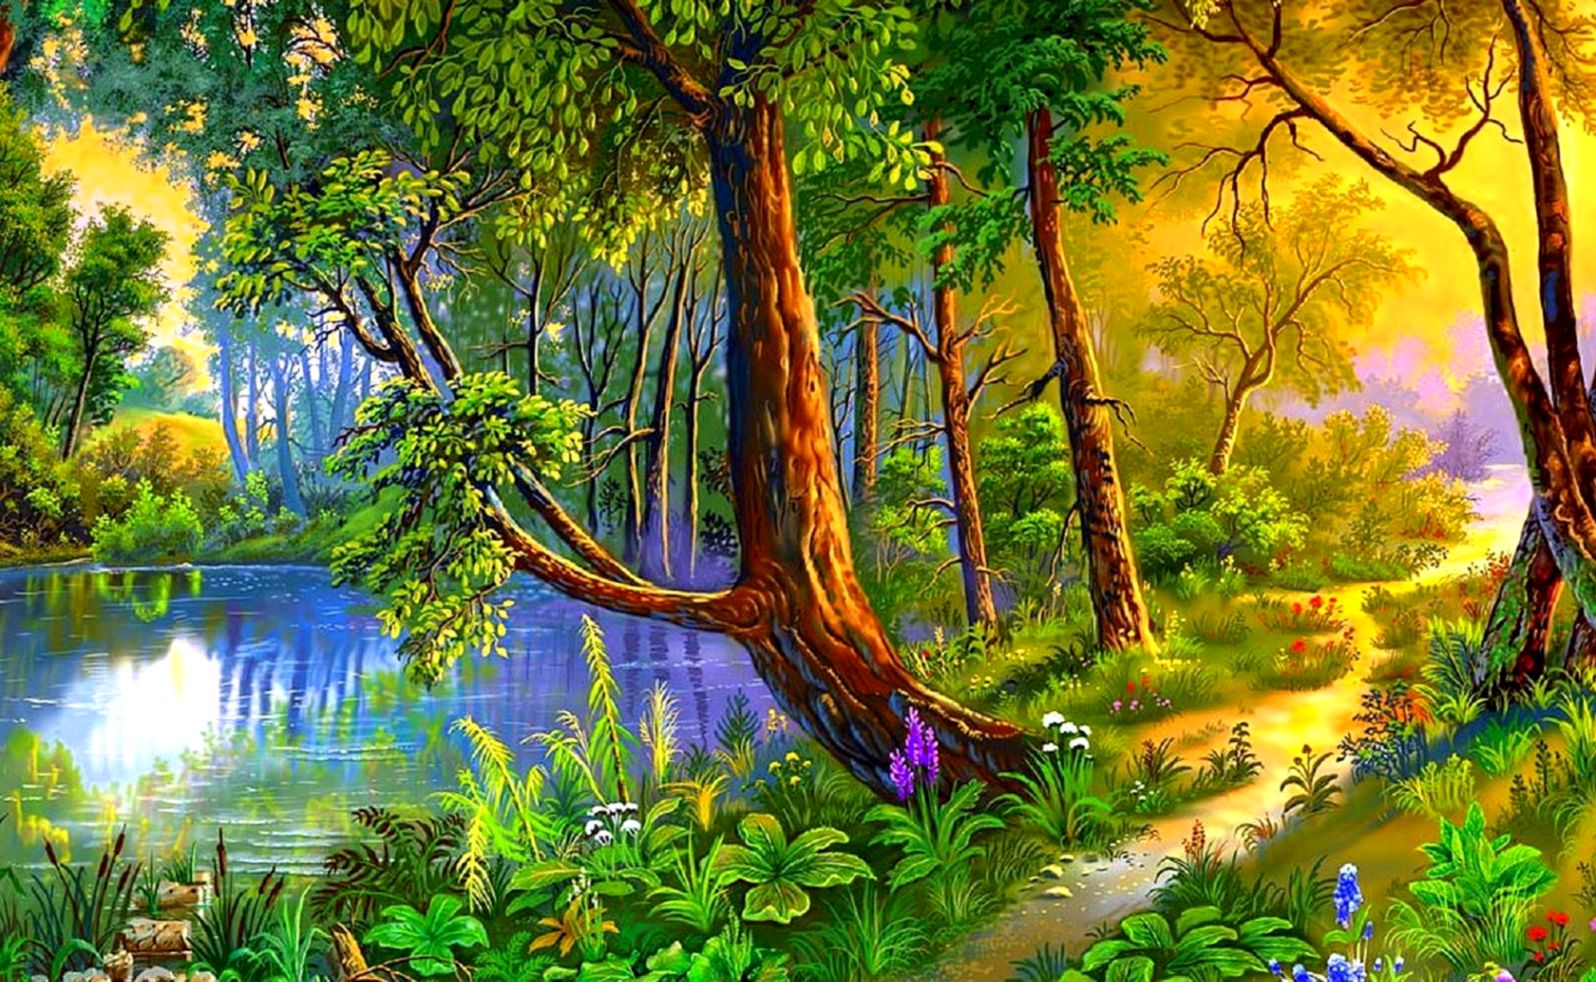 Forest Path Colorful Paintings Sidewalk Love Seasons - August 2019 Desktop Calendar - HD Wallpaper 